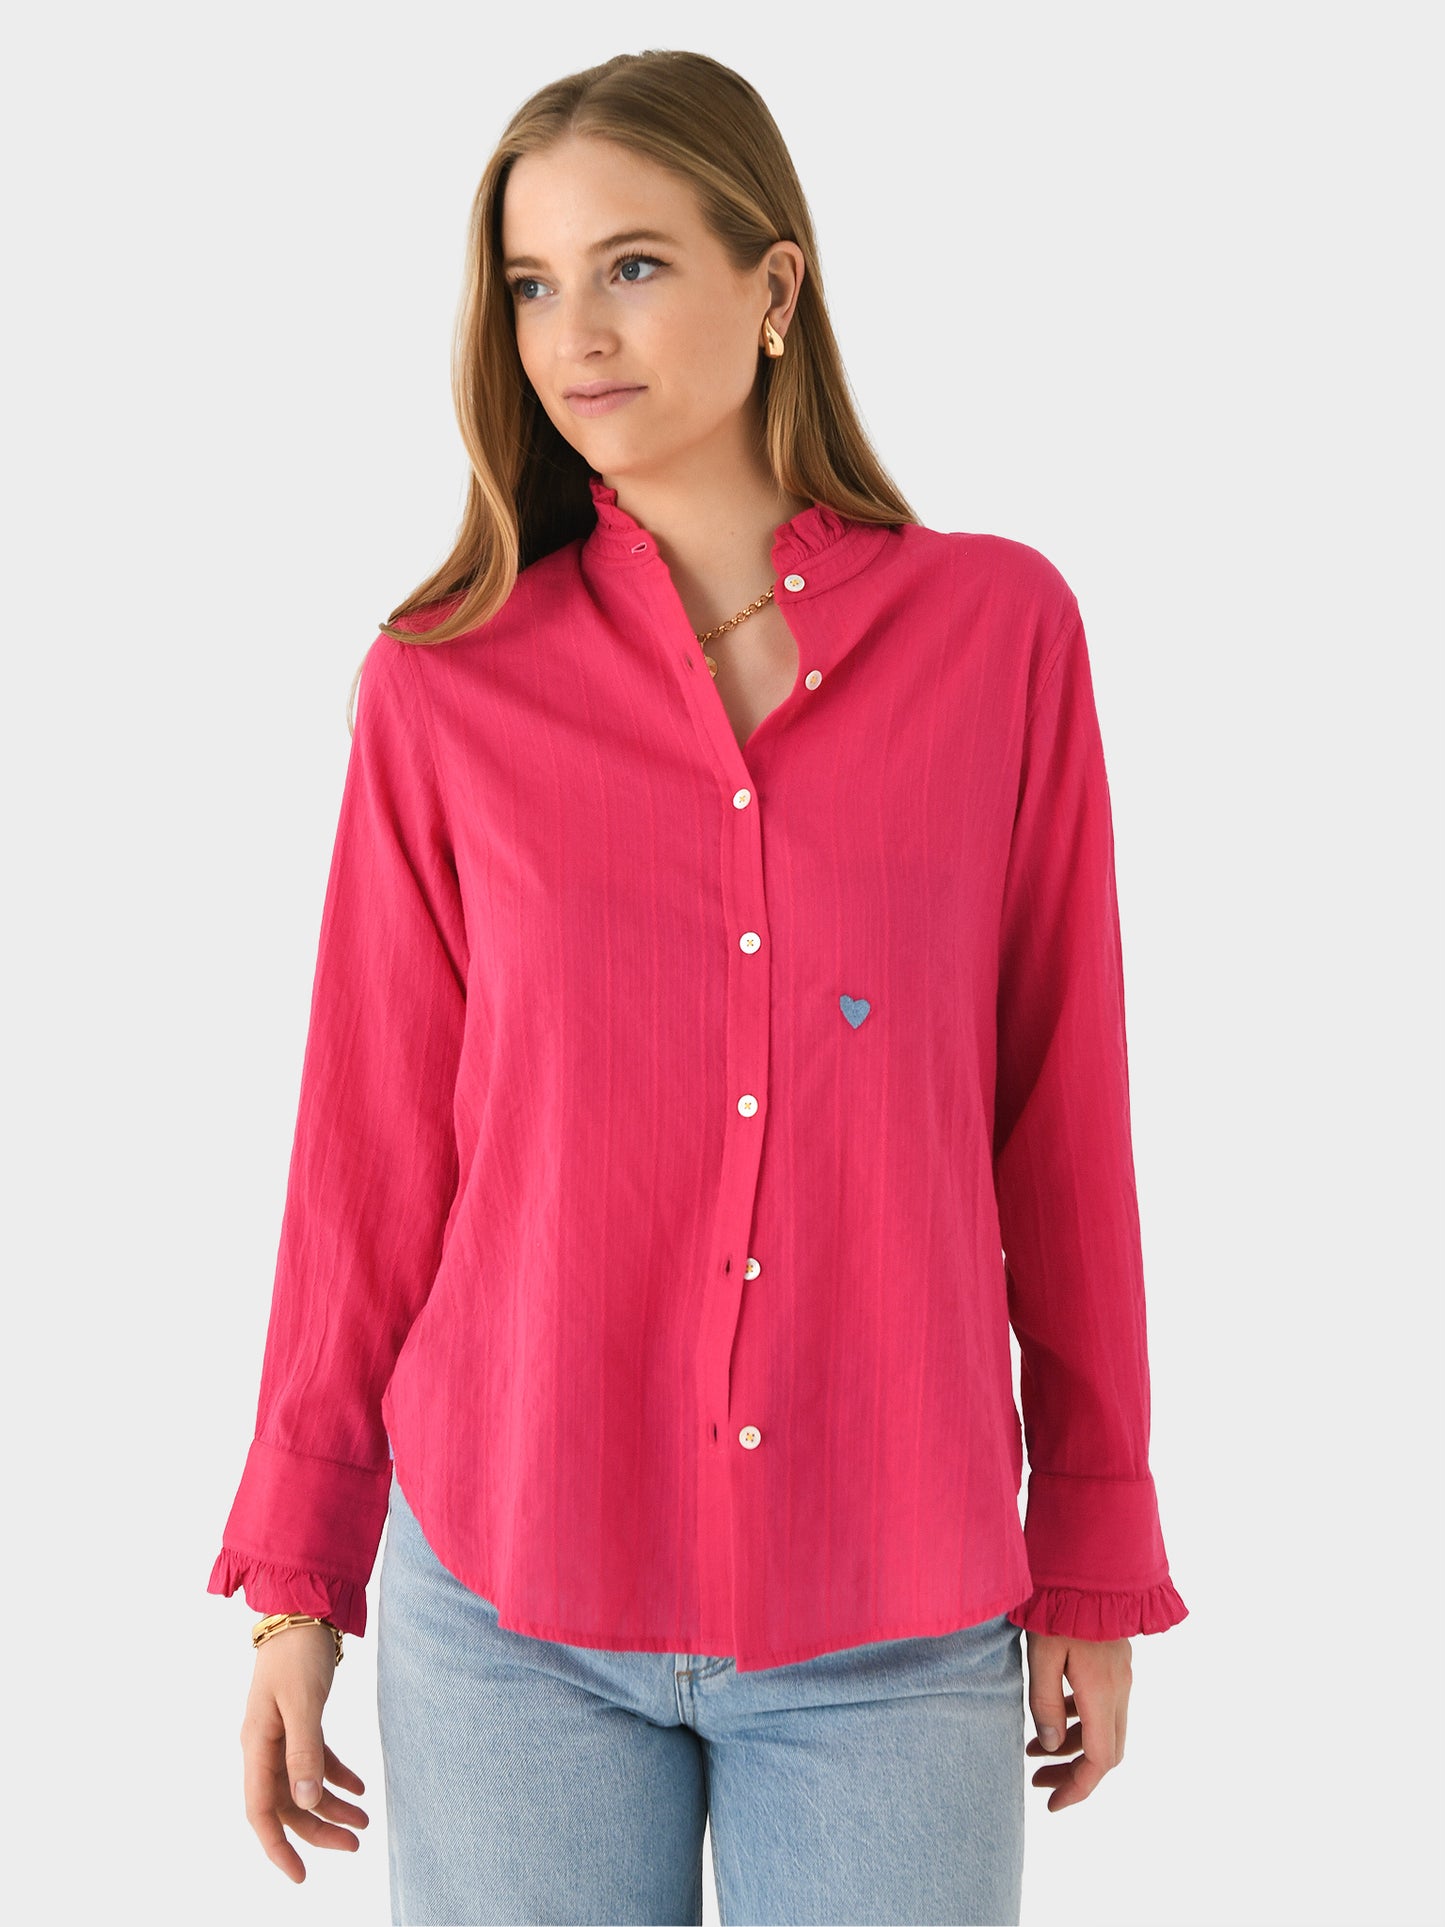 Kerri Rosenthal Women's Mia Ruffle Cotton Shirt